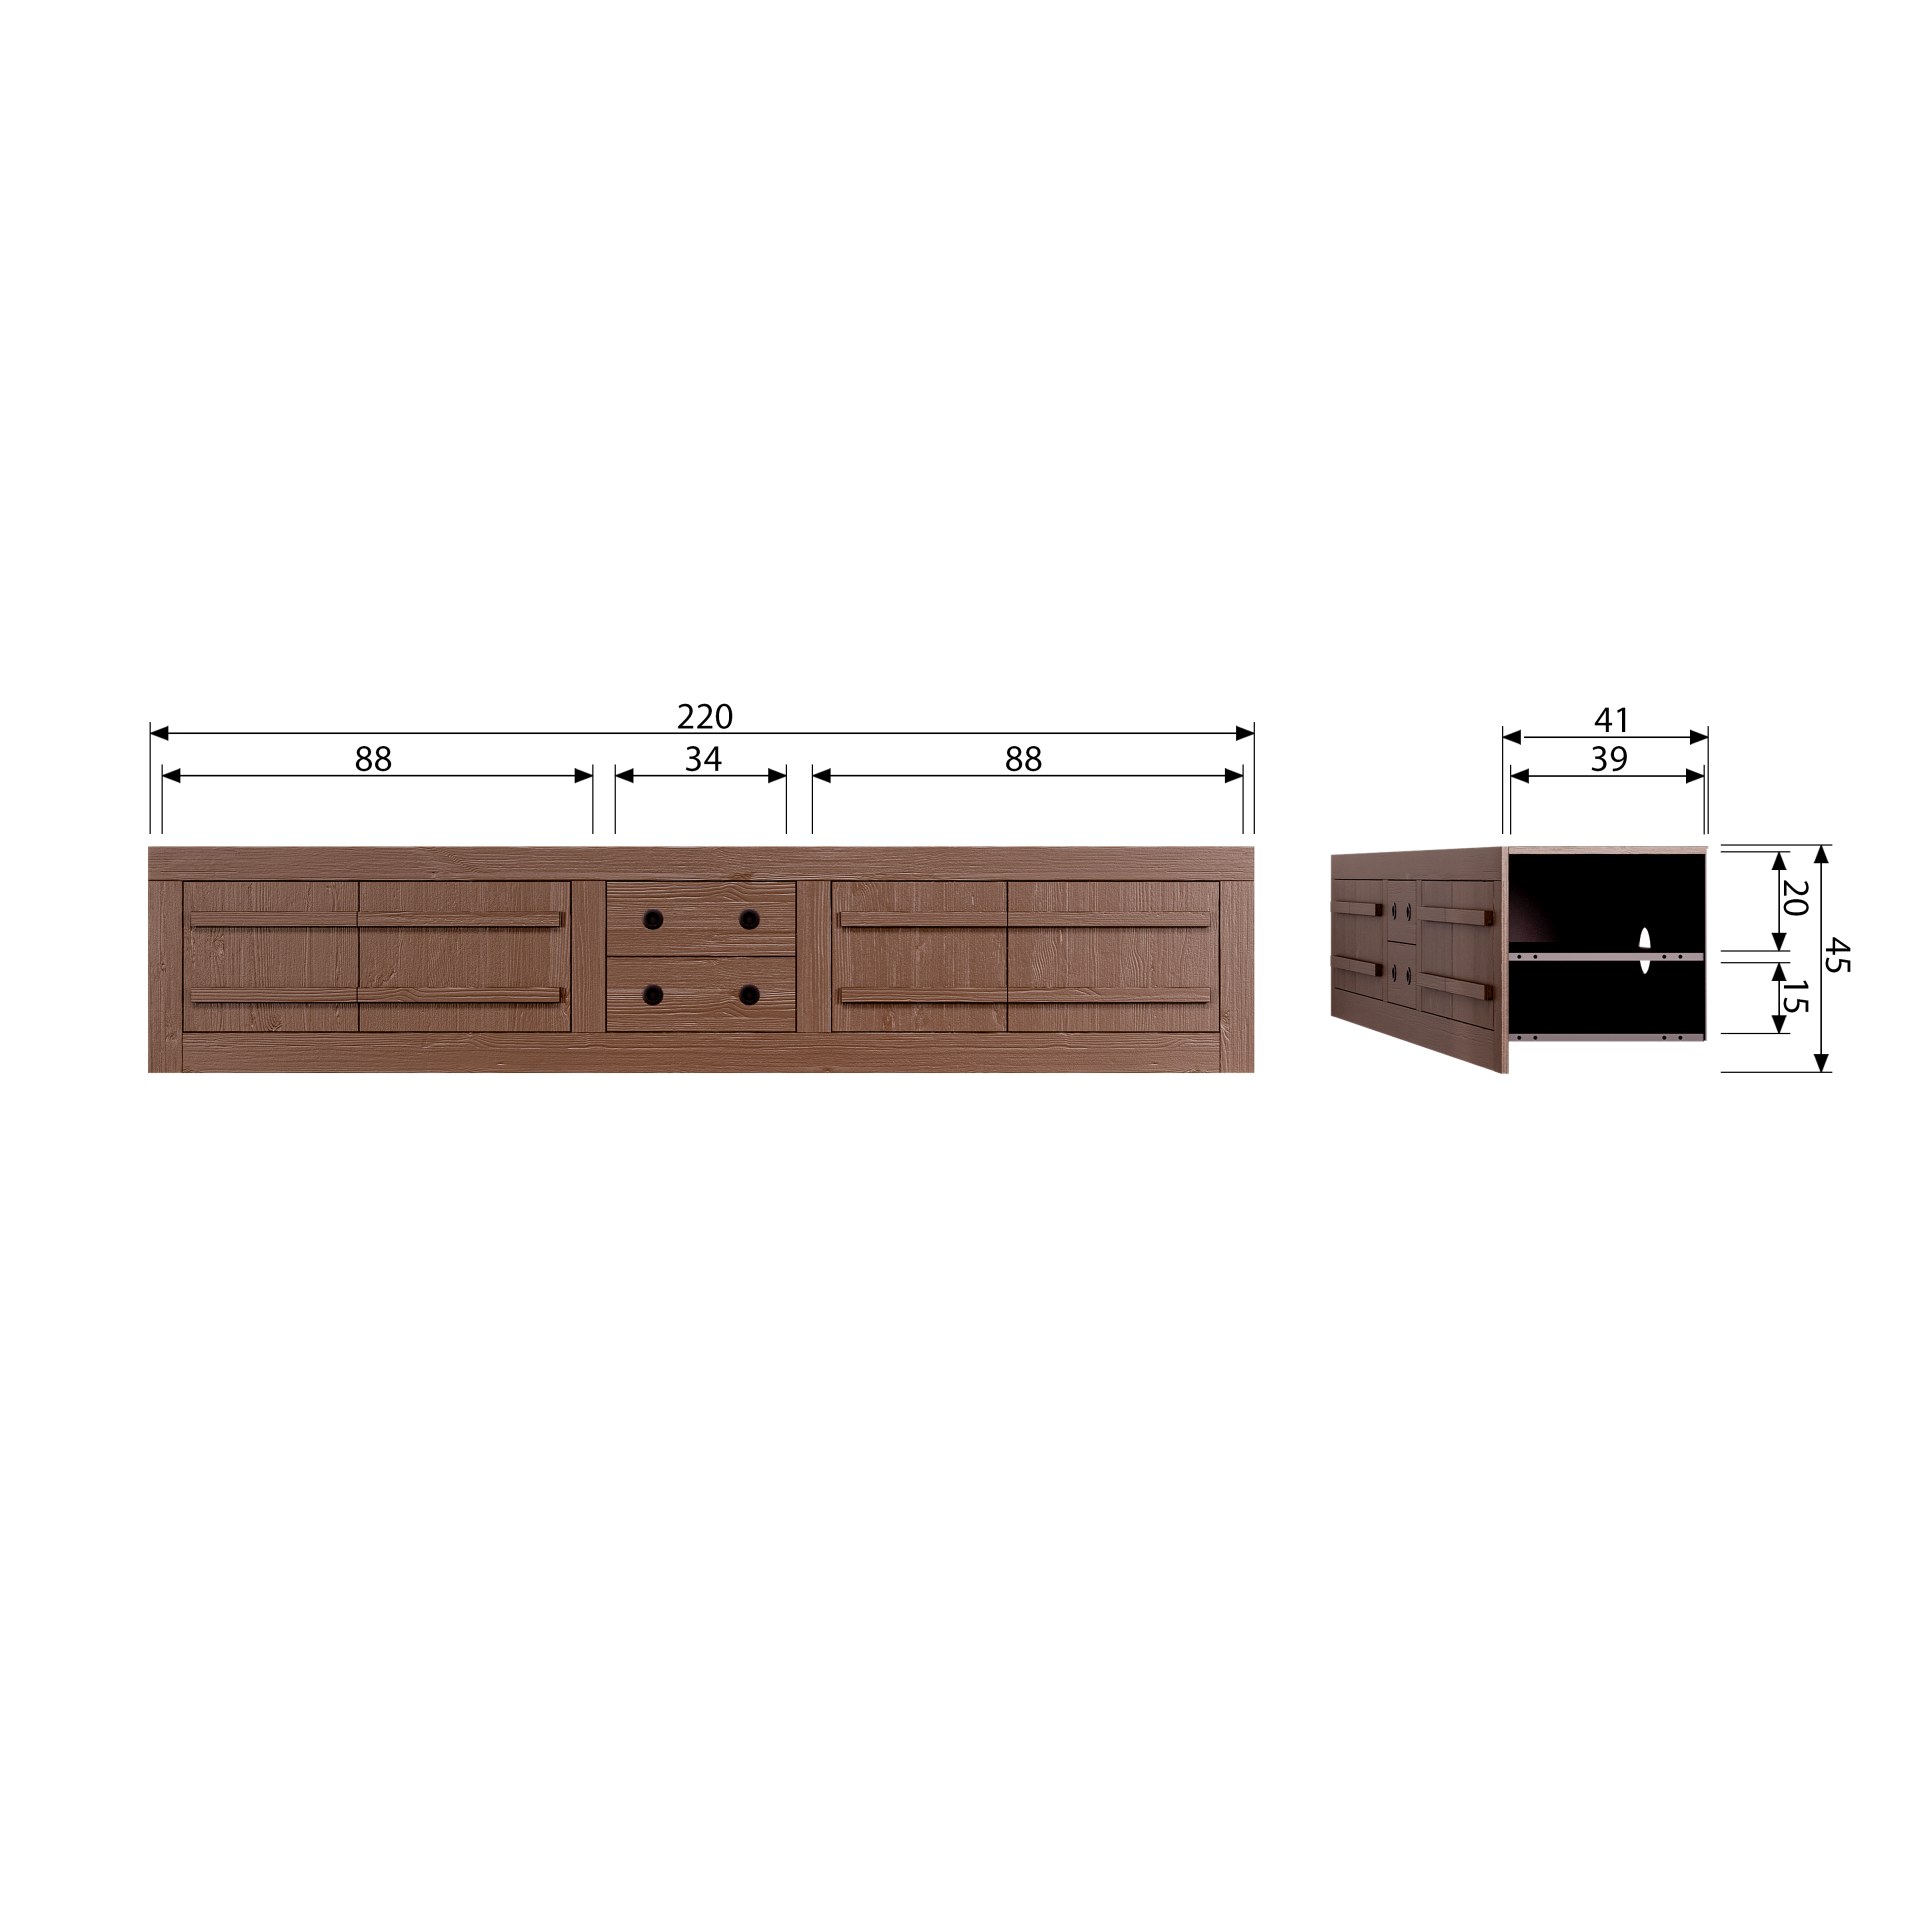 Das TV-Board Hiku überzeugt mit seinem moderndem Design. Gefertigt wurde es aus Kiefernholz, welches einen braunen Farbton besitzt. Das TV-Board verfügt über vier Türen und zwei Schubladen. Die Breite beträgt 220 cm.